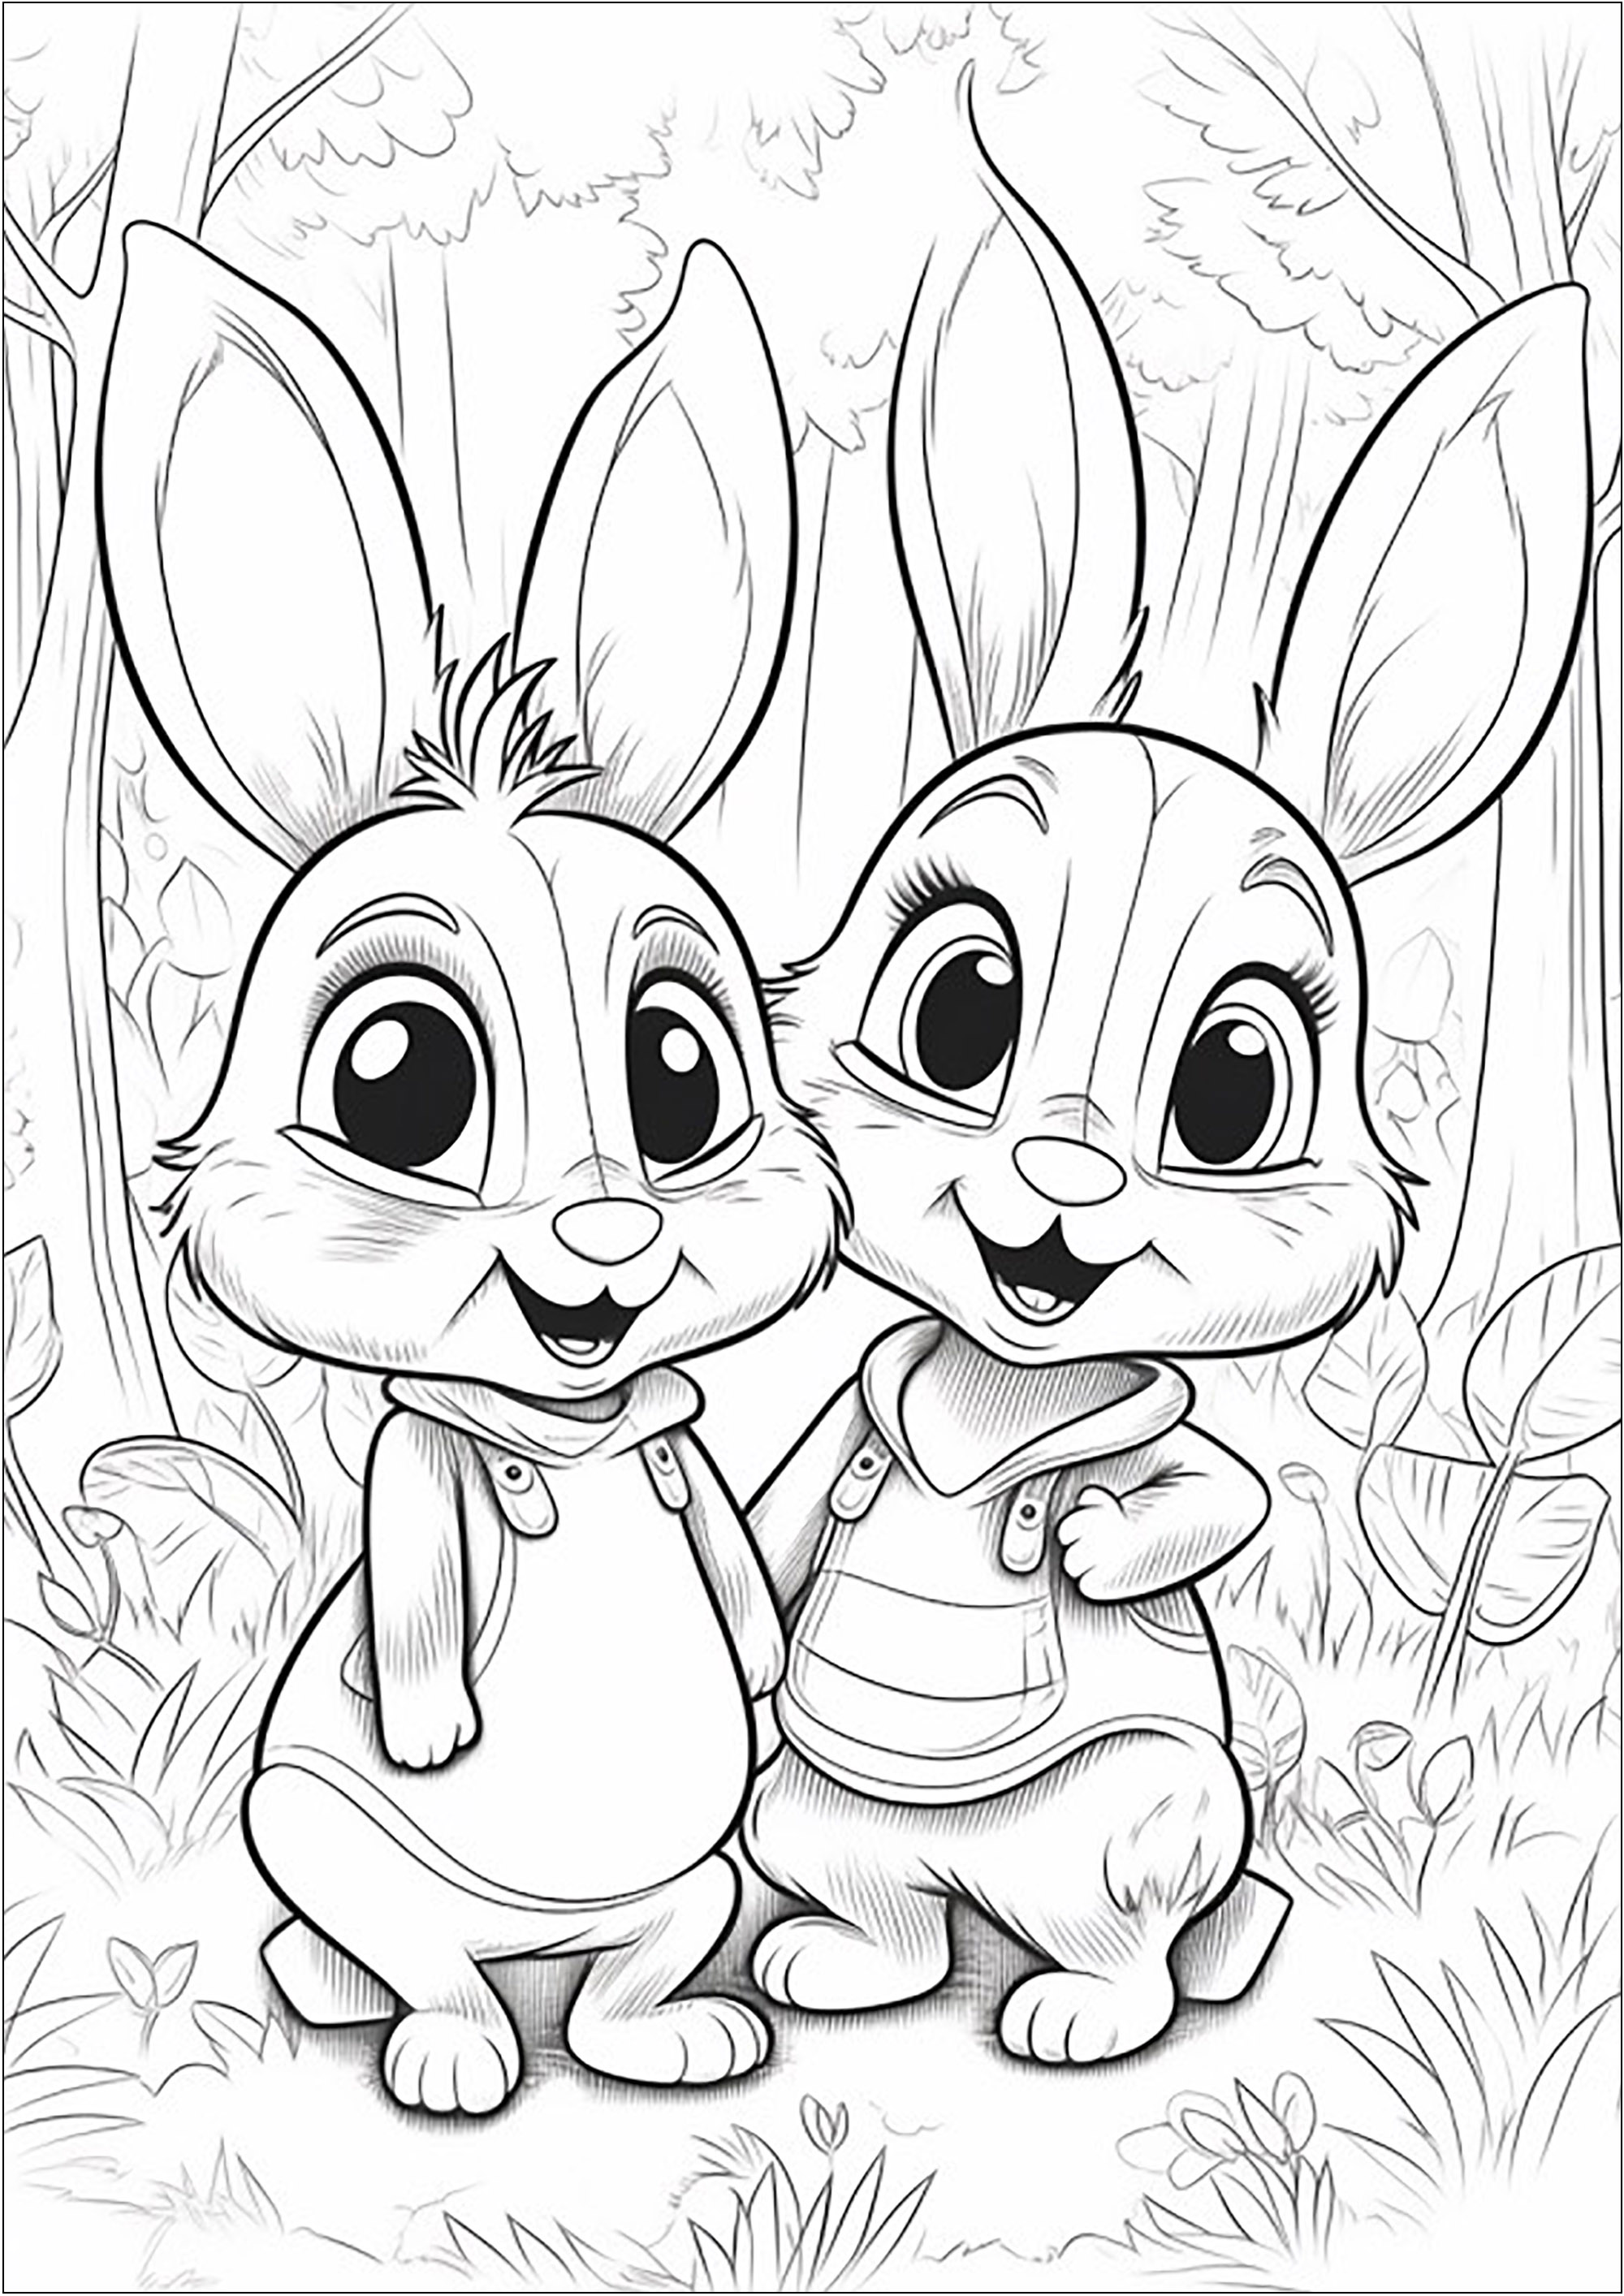 Dos pequeños Conejos en el bosque - 1. Dos Conejos sonrientes en un hermoso bosque